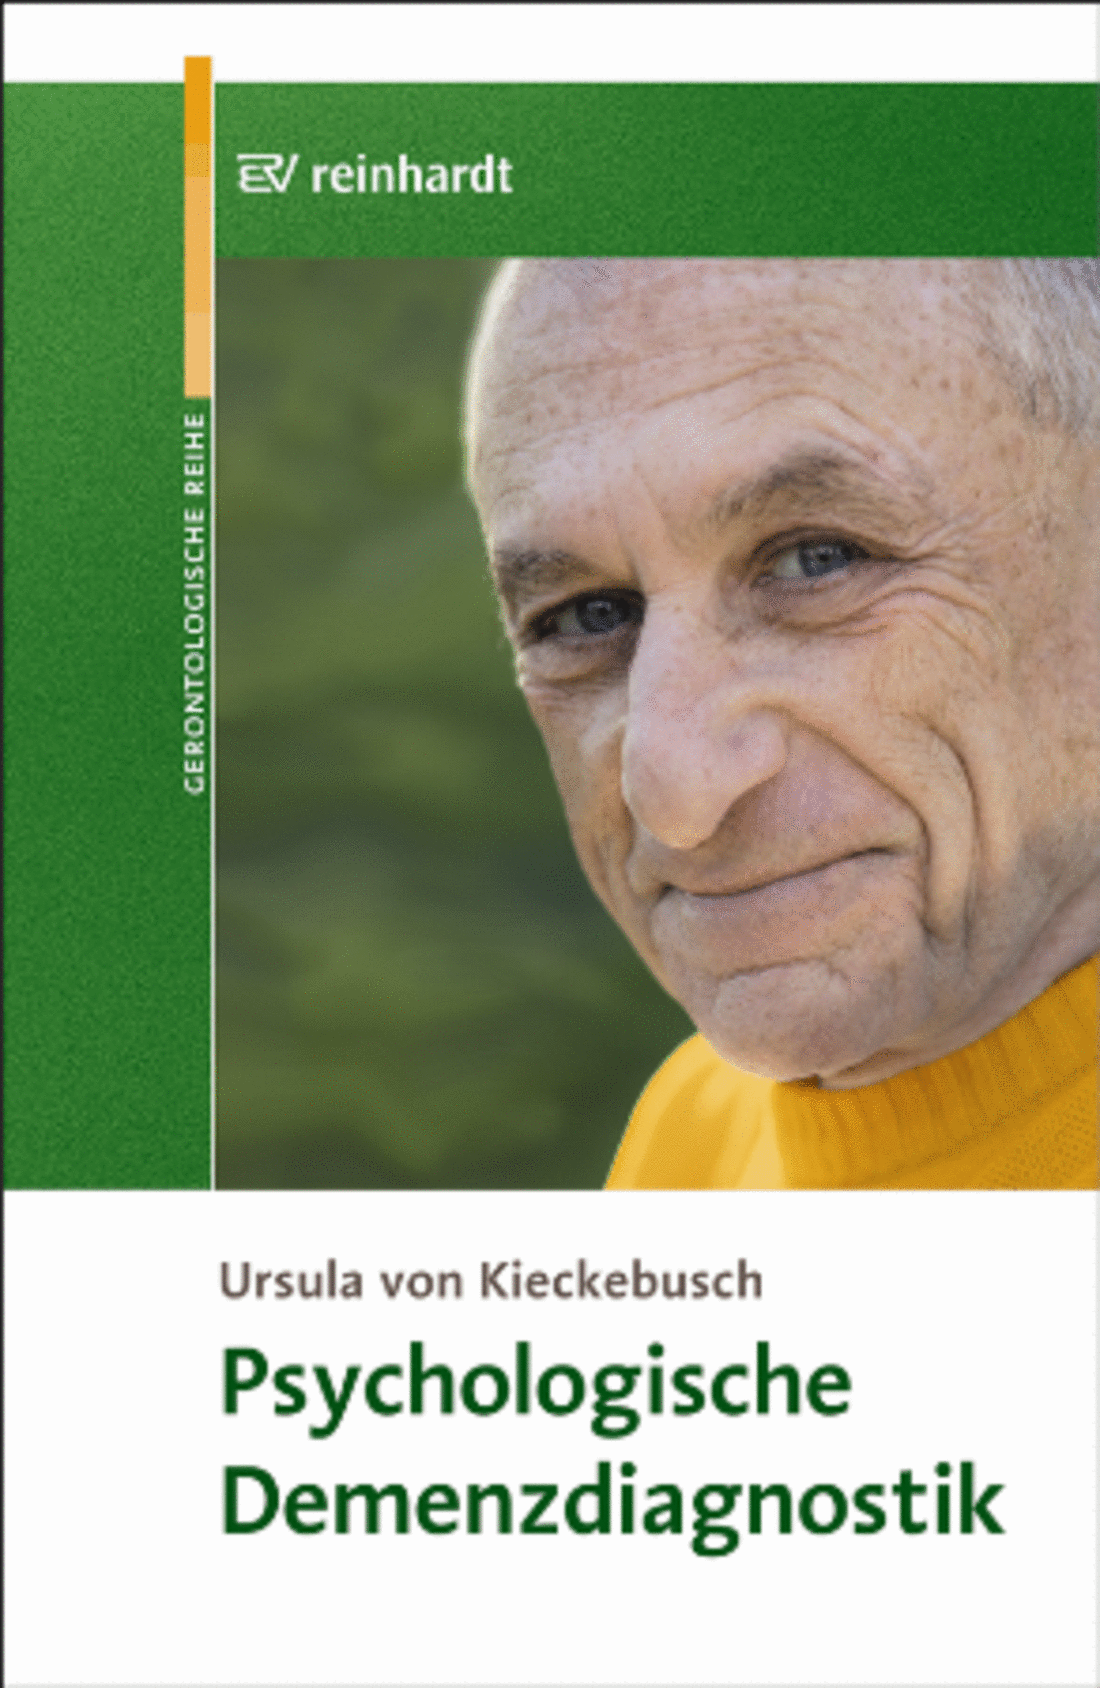 Buch: Psychologische Demenzdiagnostik